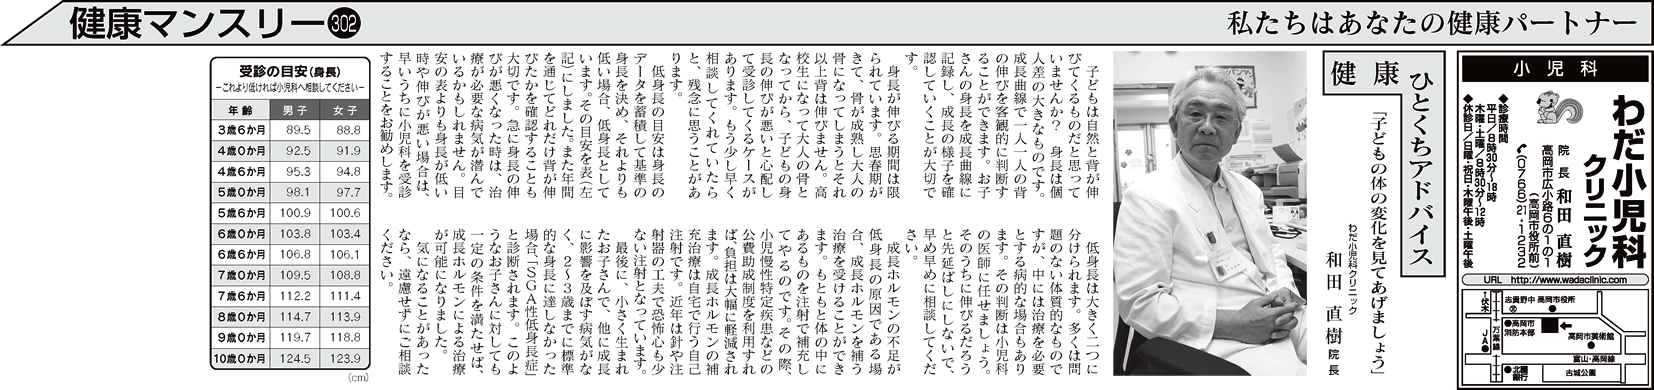 北日本新聞「健康マンスリー」2017年2月